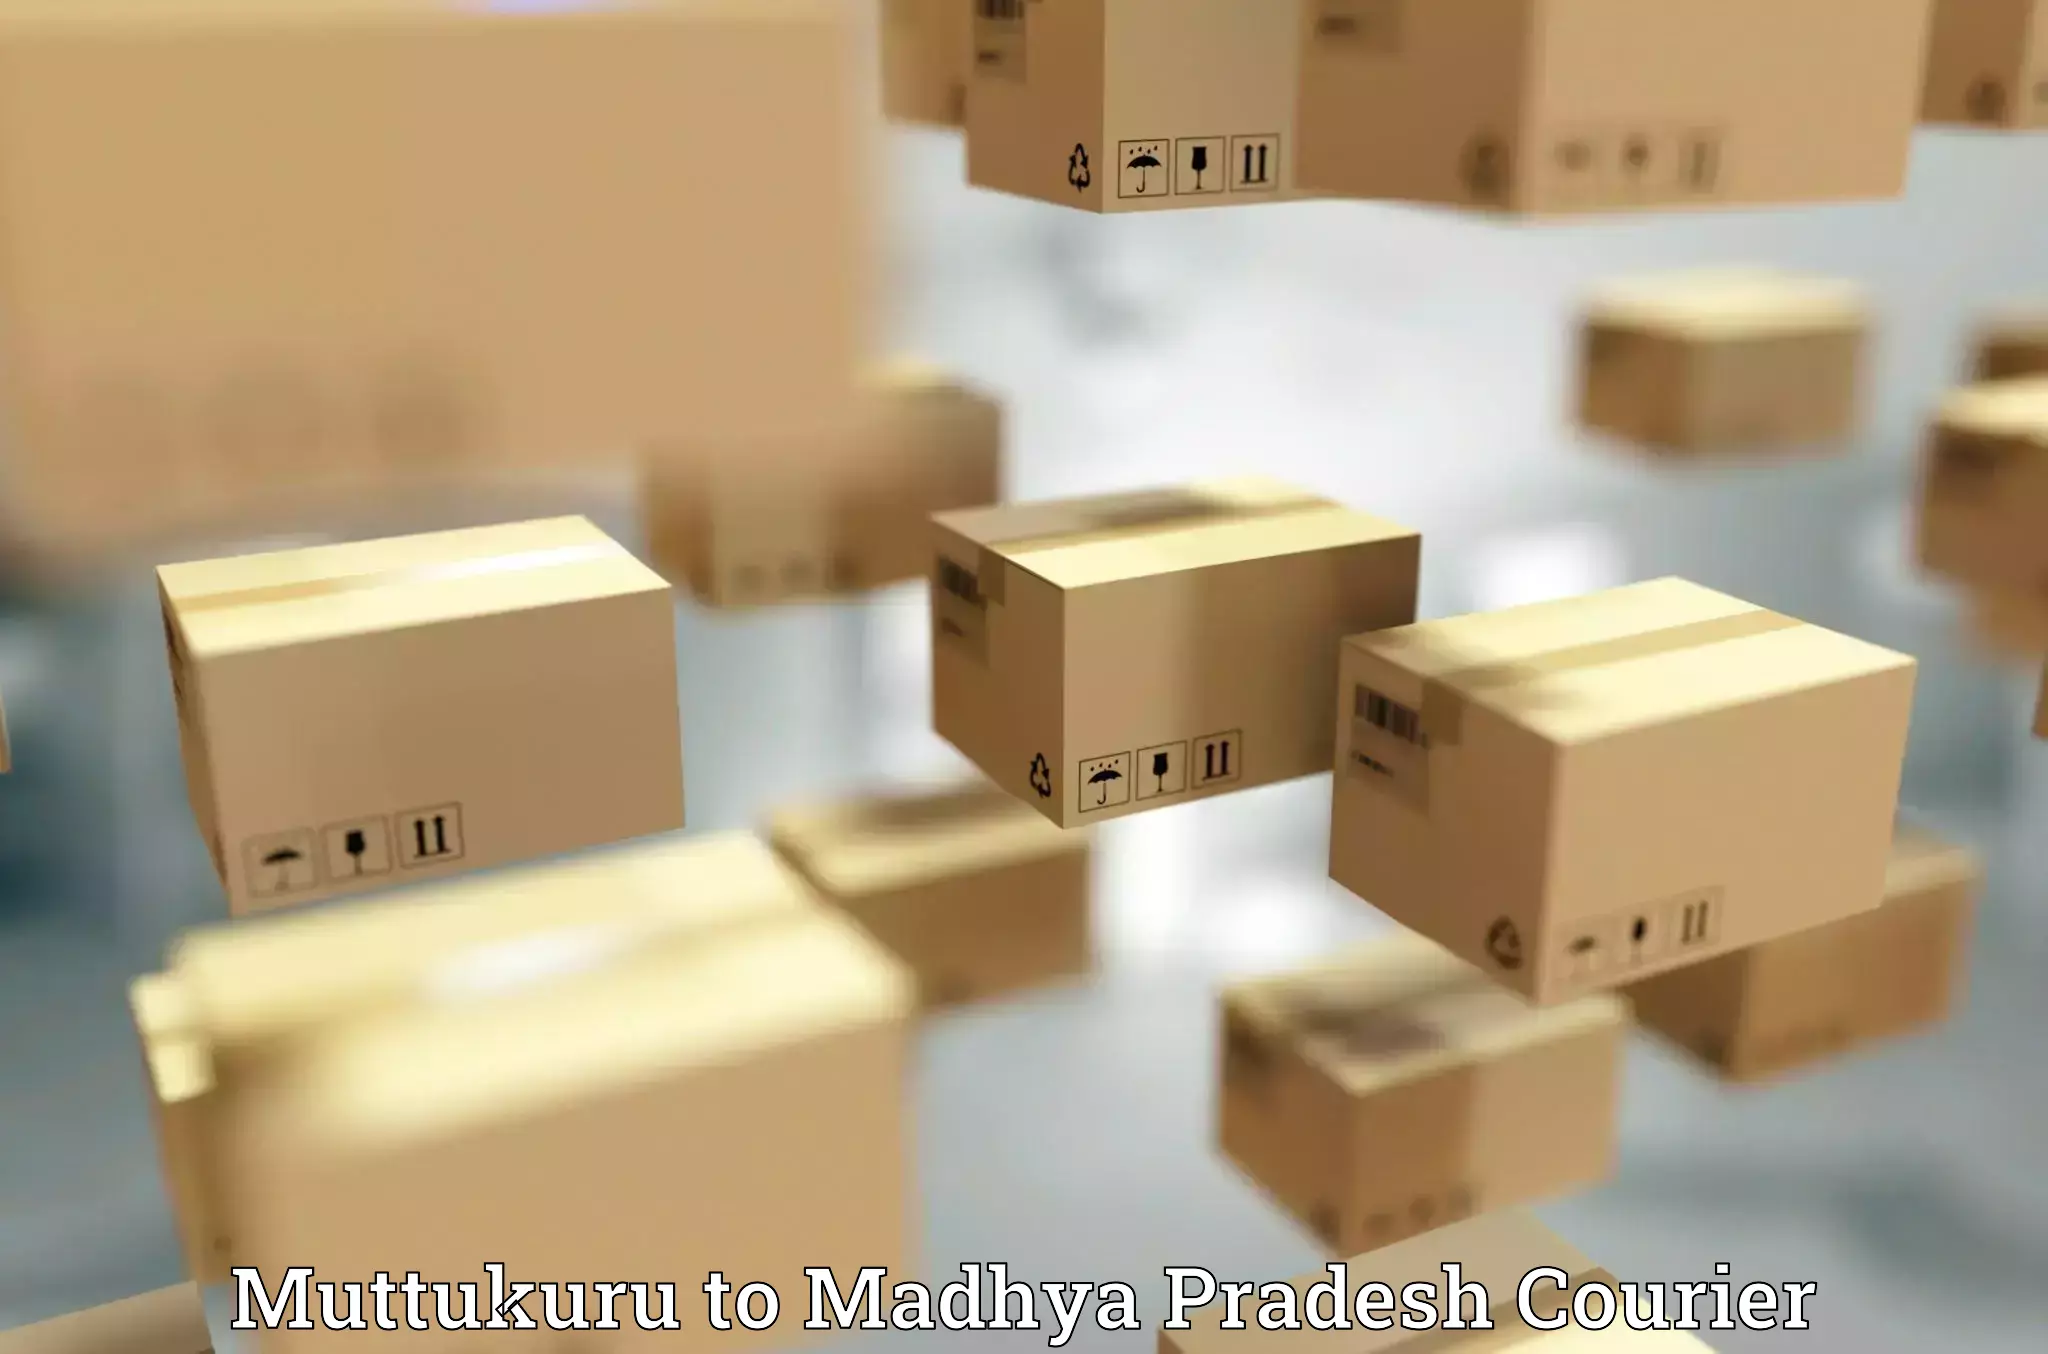 24/7 courier service Muttukuru to Khajuraho